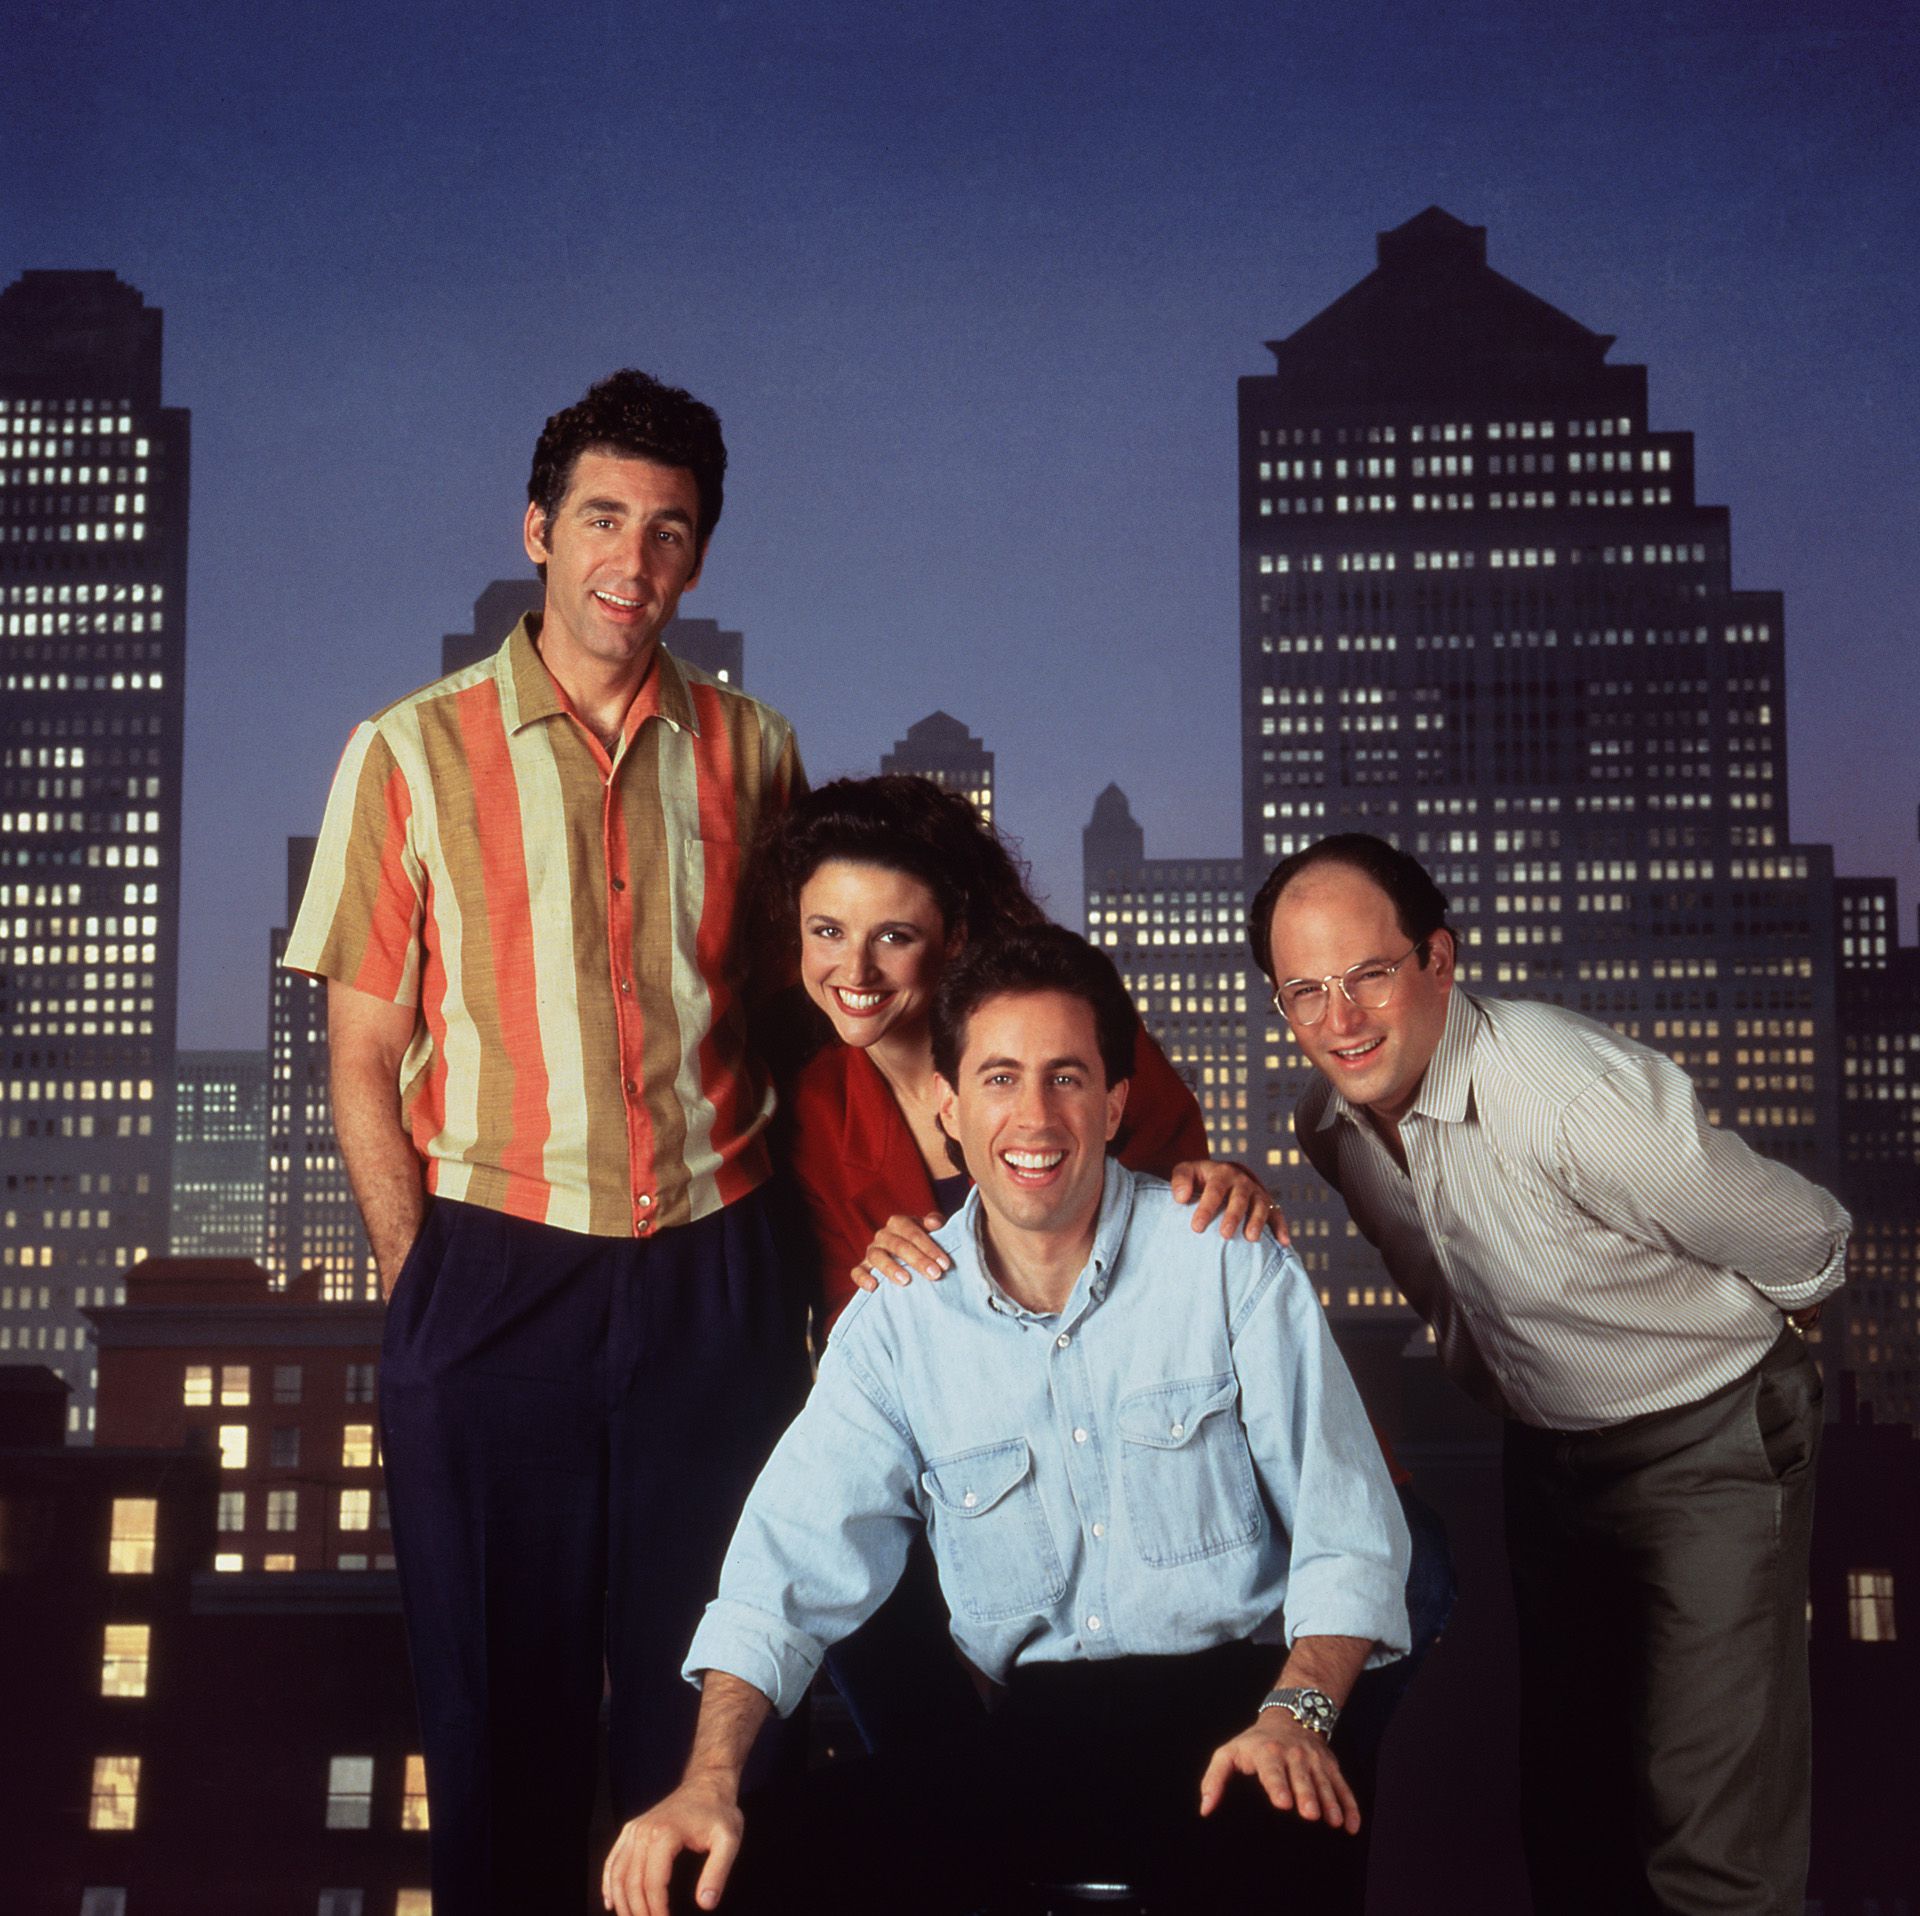 Los 180 episodios de “Seinfeld” llegan a Netflix (en todo el mundo) en 2021.